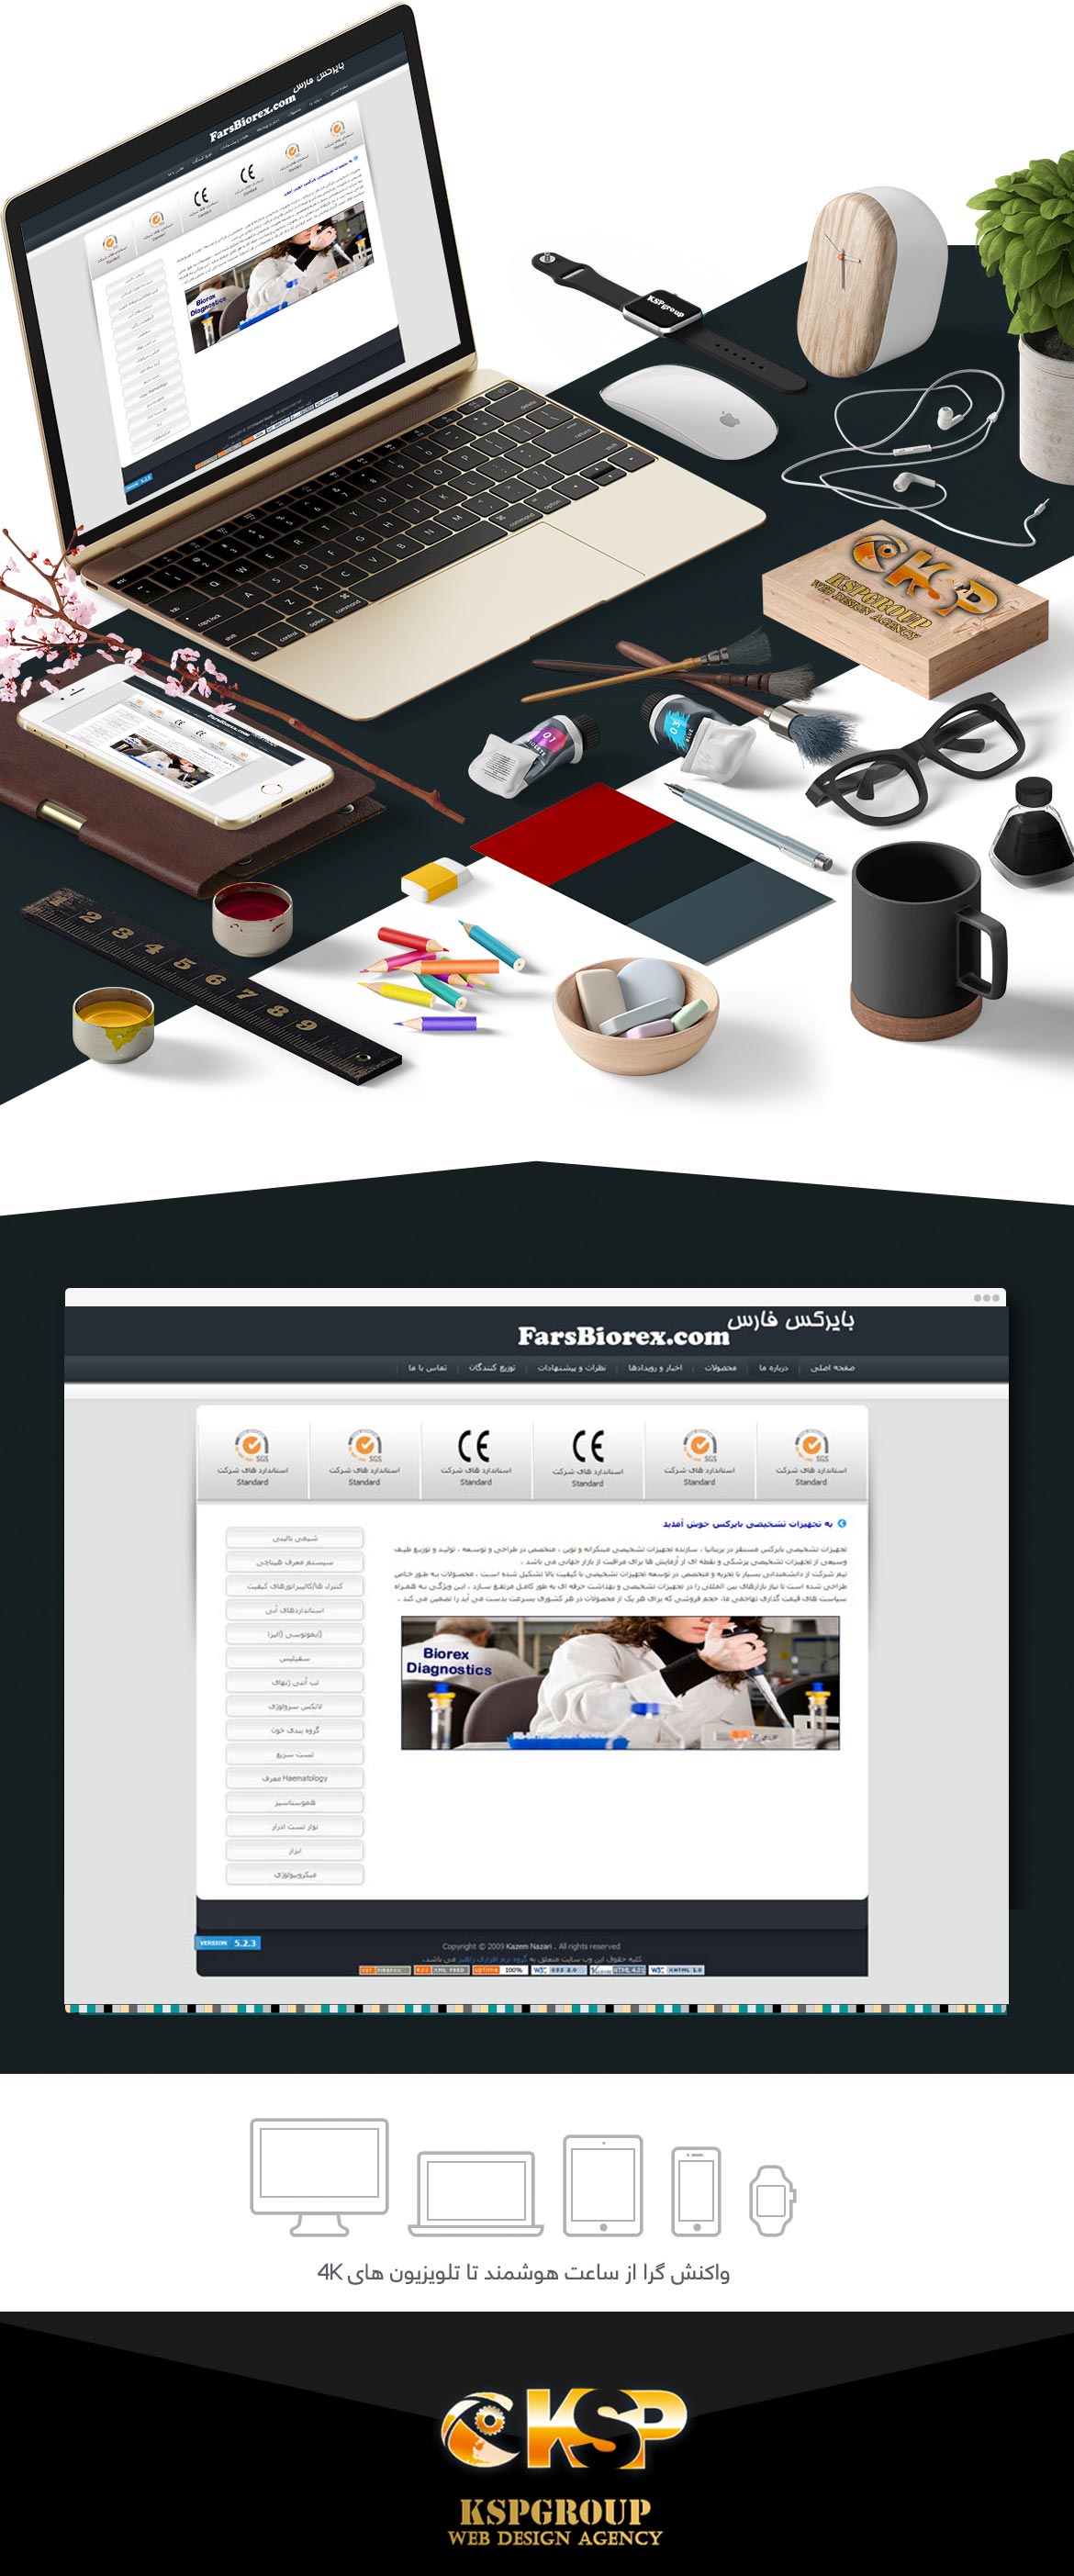 طراحی وب سایت شرکت فارس بایرکس پارس آرین